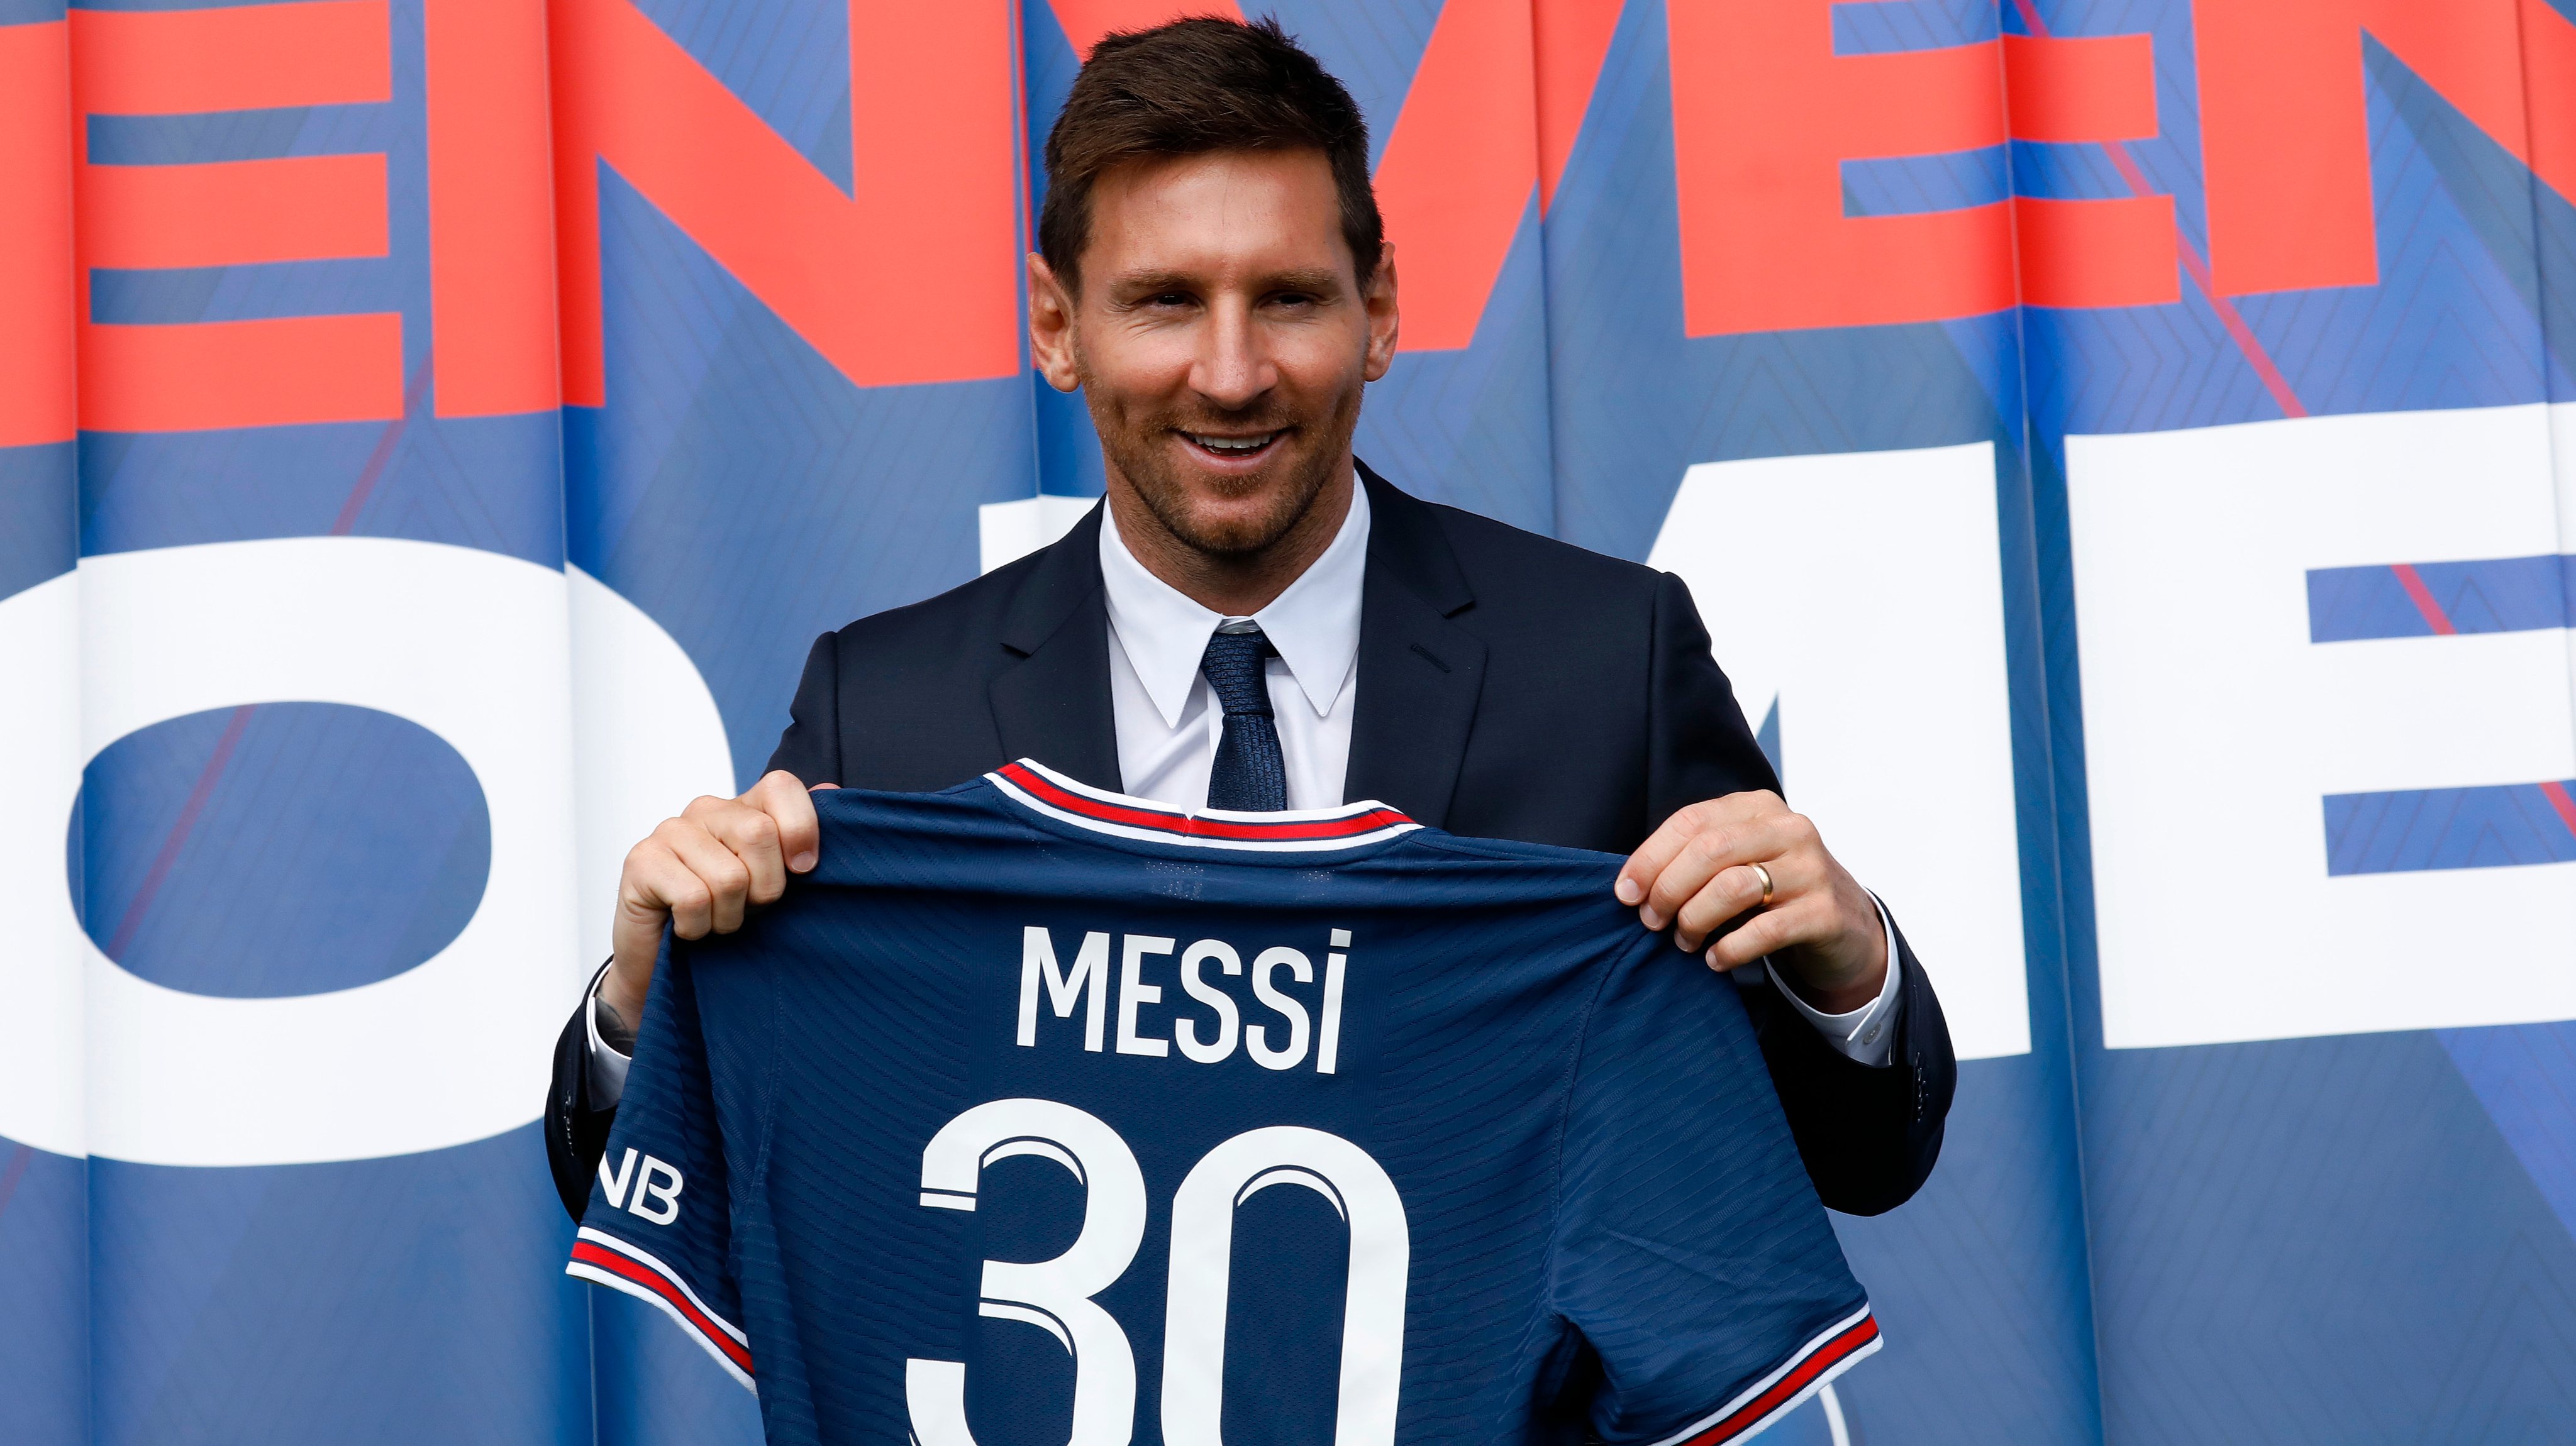 Depois de 21 anos no Barcelona, Messi foi para Paris e vai jogar com o número 30